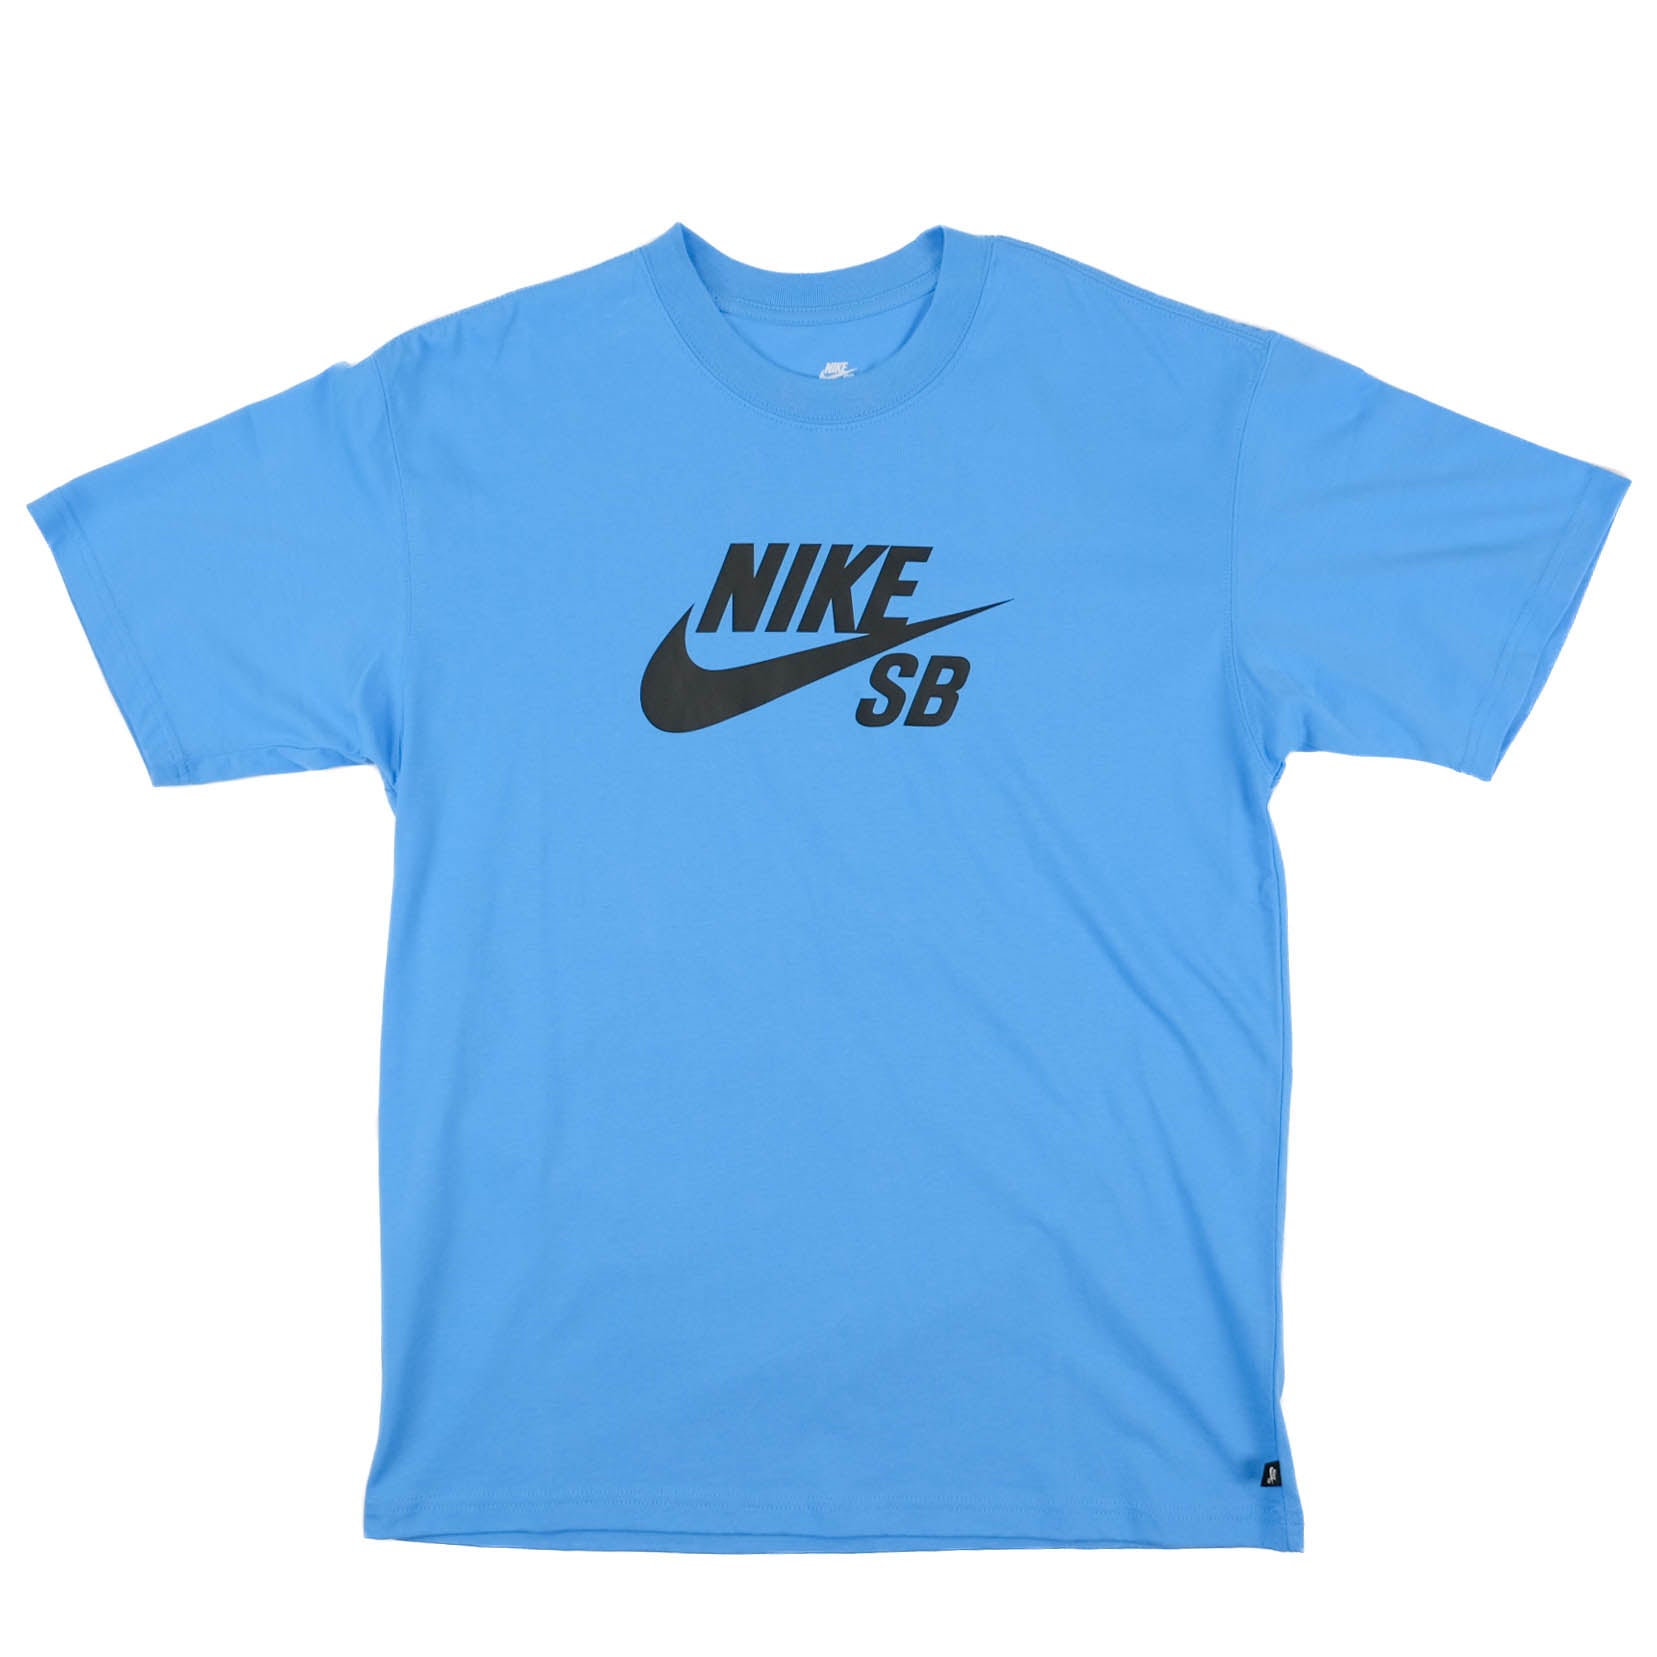 Nike SB S/S Logo Tee - Uni Blue/Black